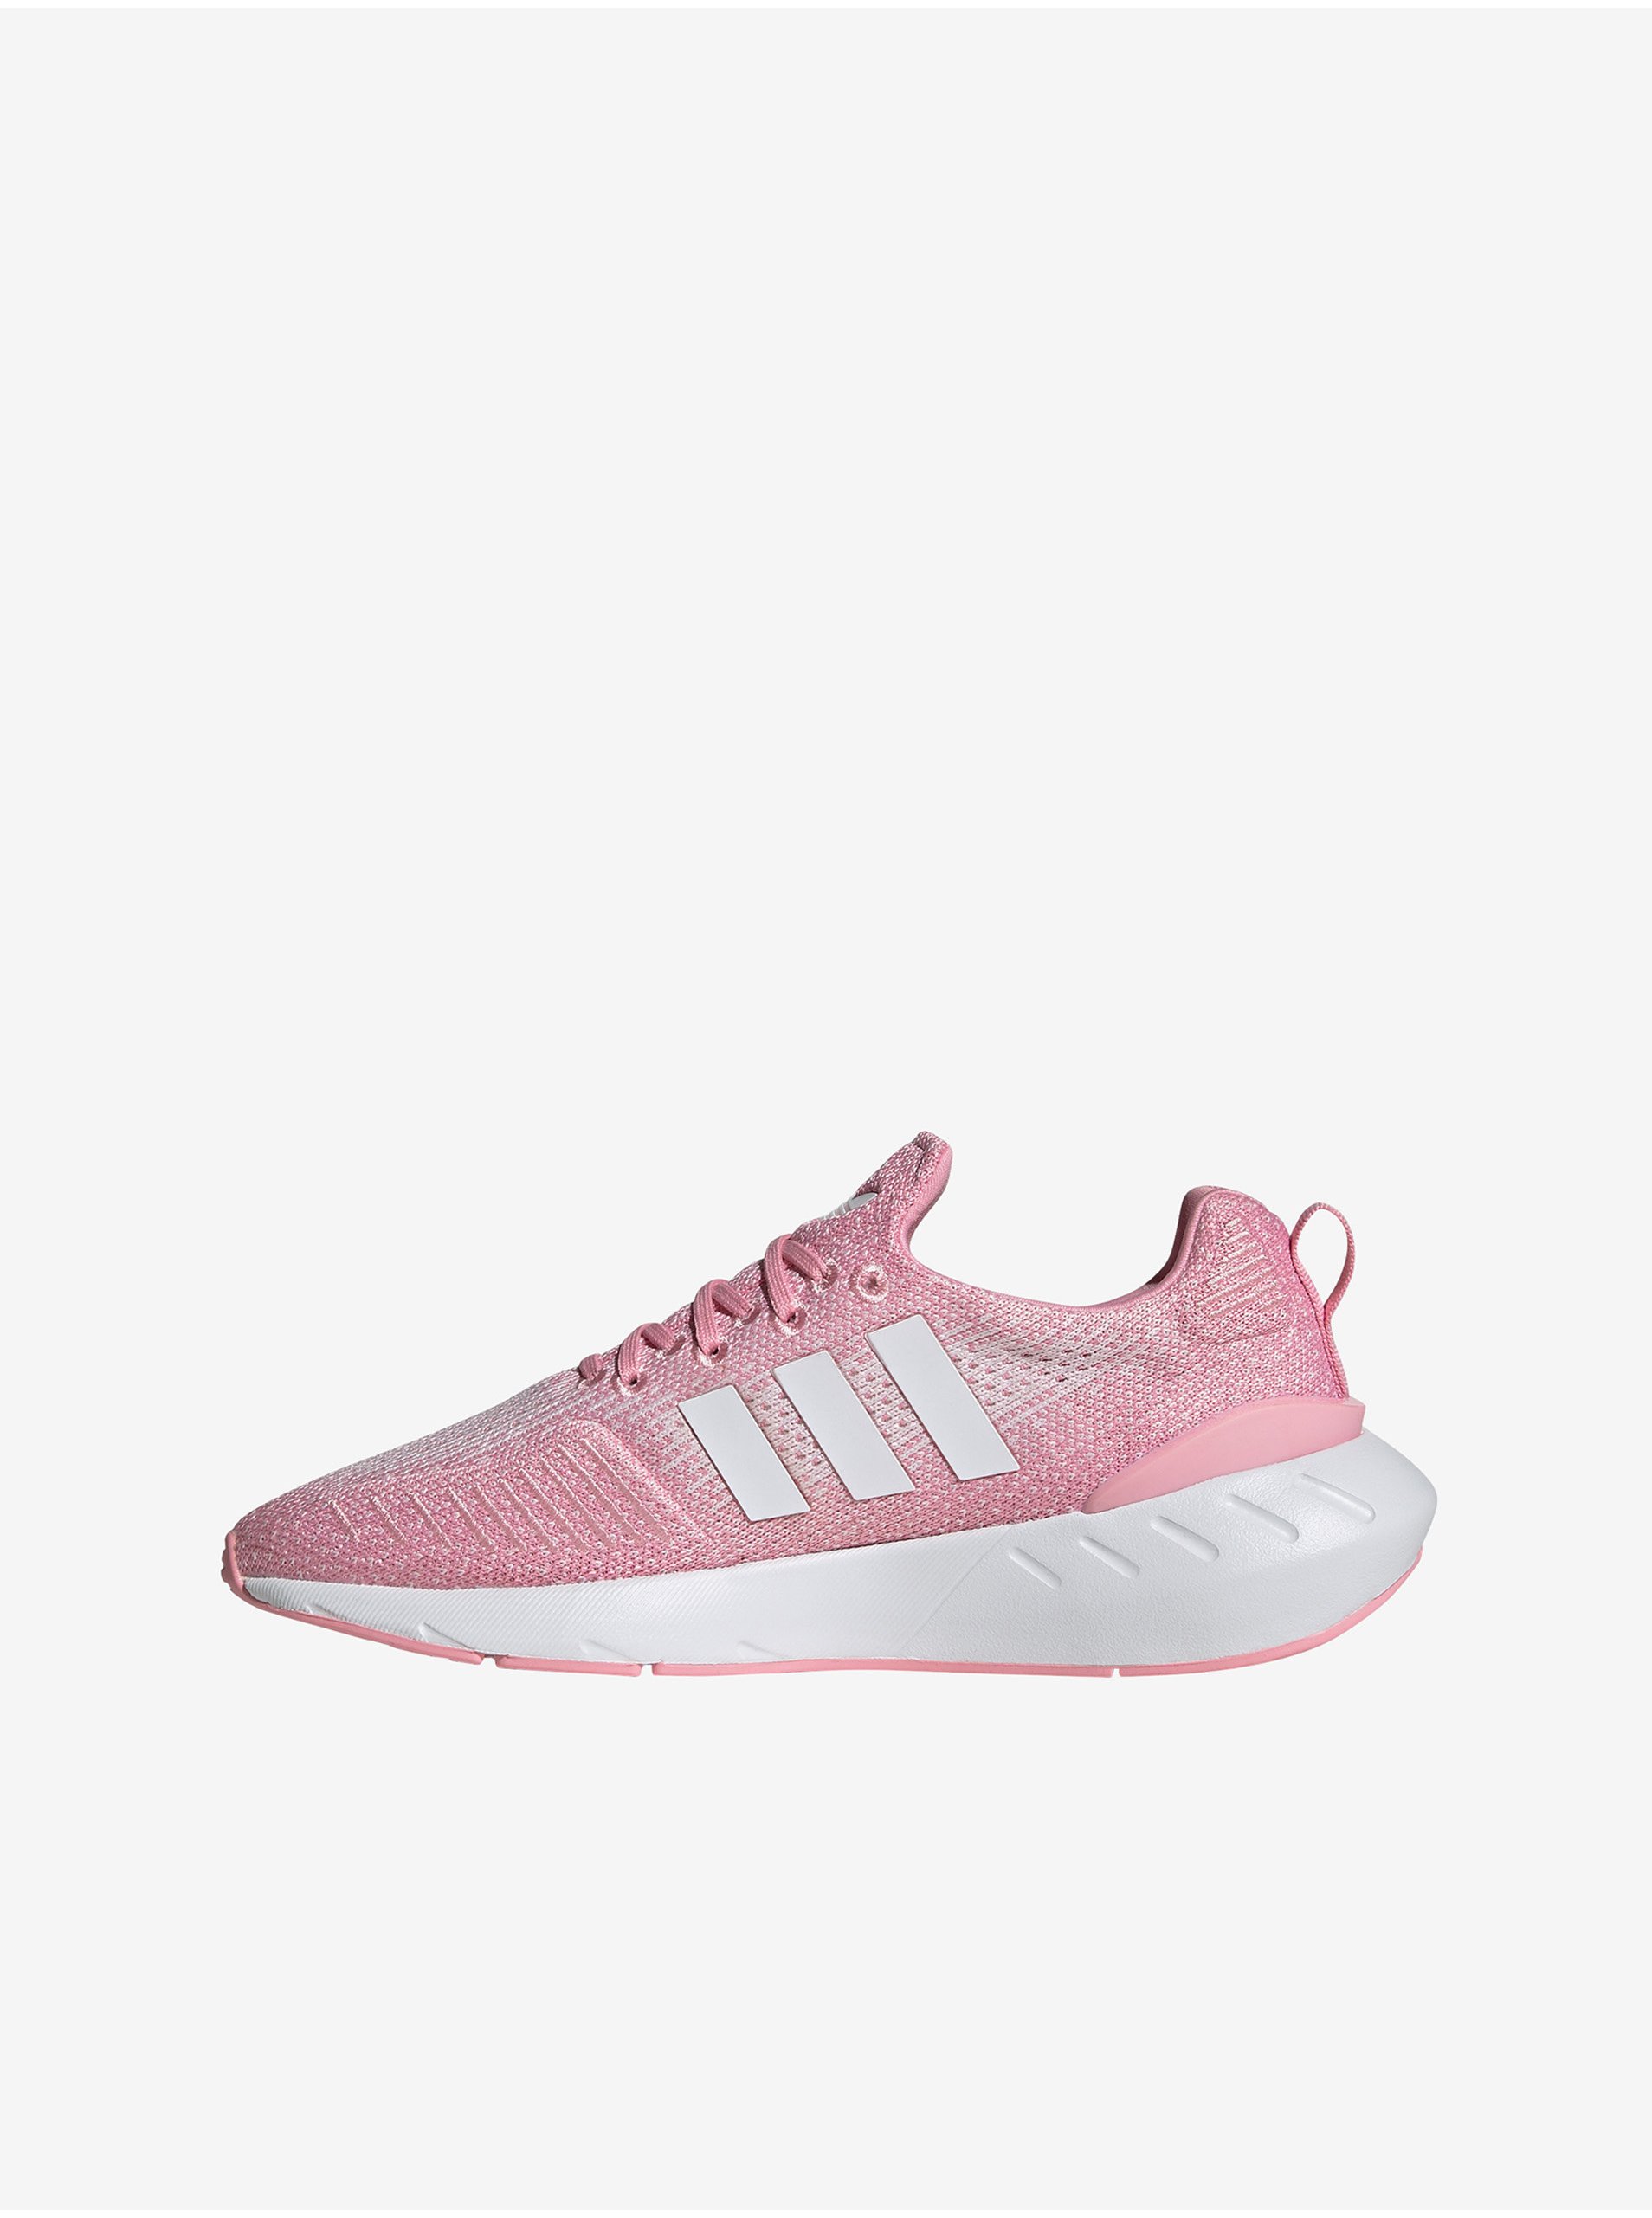 E-shop Ružové dámske tenisky adidas Originals Swift Run 22